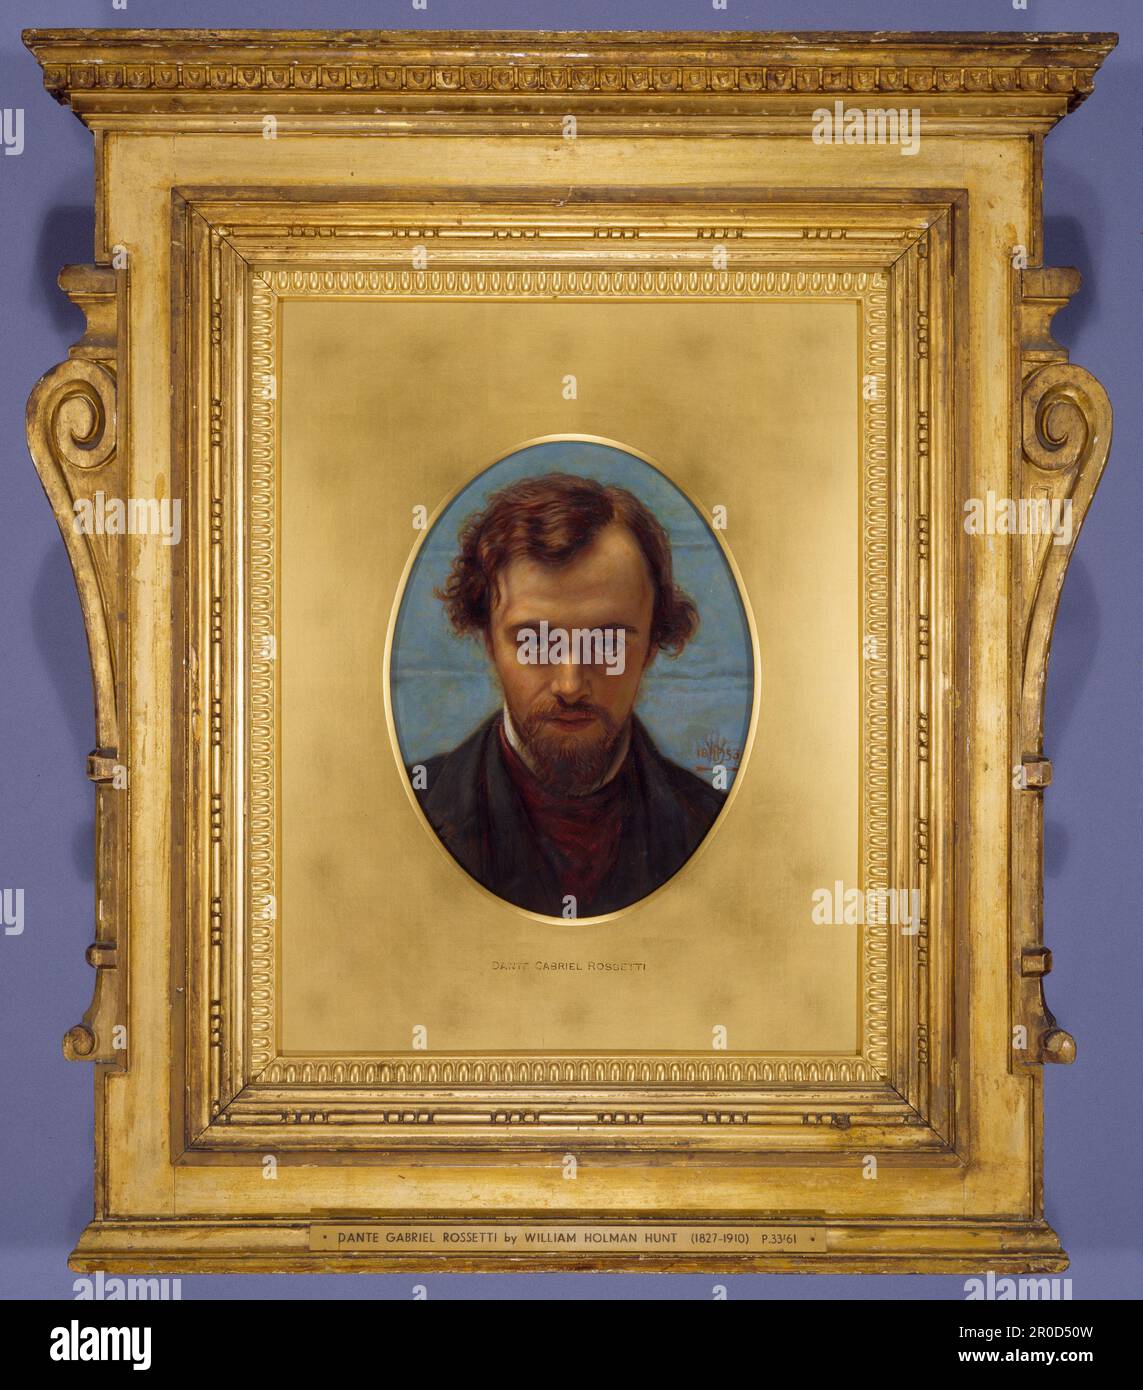 Portrait de Dante Gabriel Rossetti à 22 ans, 1882-1883. Dans le châssis. Artiste: William Holman Hunt.. Le tableau montre Rossetti à 22 ans, mais ce portrait a été créé après la mort de Rossetti en 1882 à l'âge de 53 ans. Il a été basé sur un dessin à la craie de la même taille Holman Hunt créé en 1853. Banque D'Images